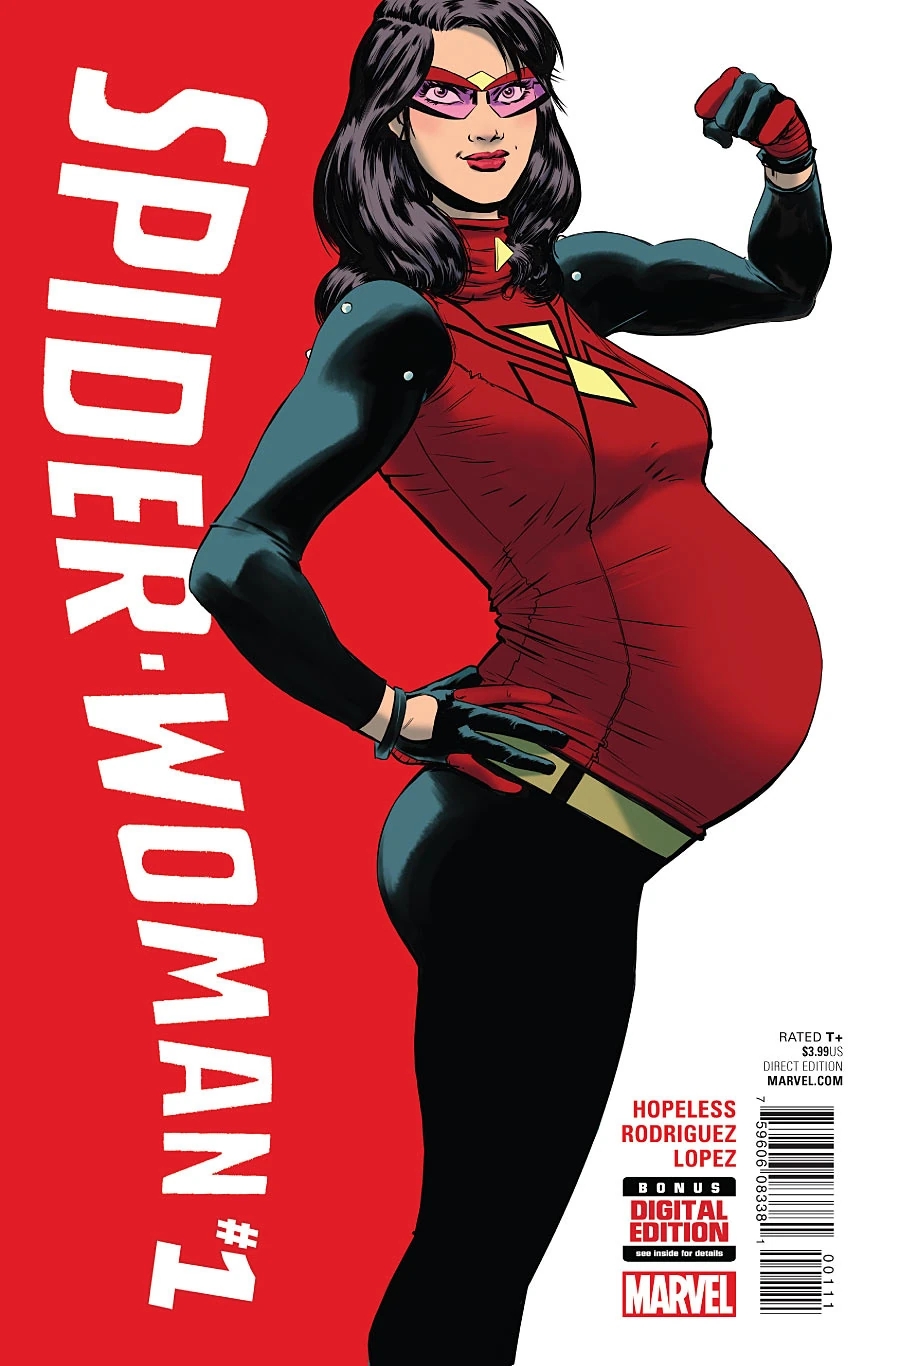 Portada del sexto volumen de Spider-Woman en la que la vemos luciendo biceps en un nuevo traje, más sobrio, brazos negros, guantes rojo y negro, pantalones negros. Unas gafas de cristales violetas y un boddy rojo con un dibujo de araña con los interiores amarillos. Ah, sí, y está embarazada.